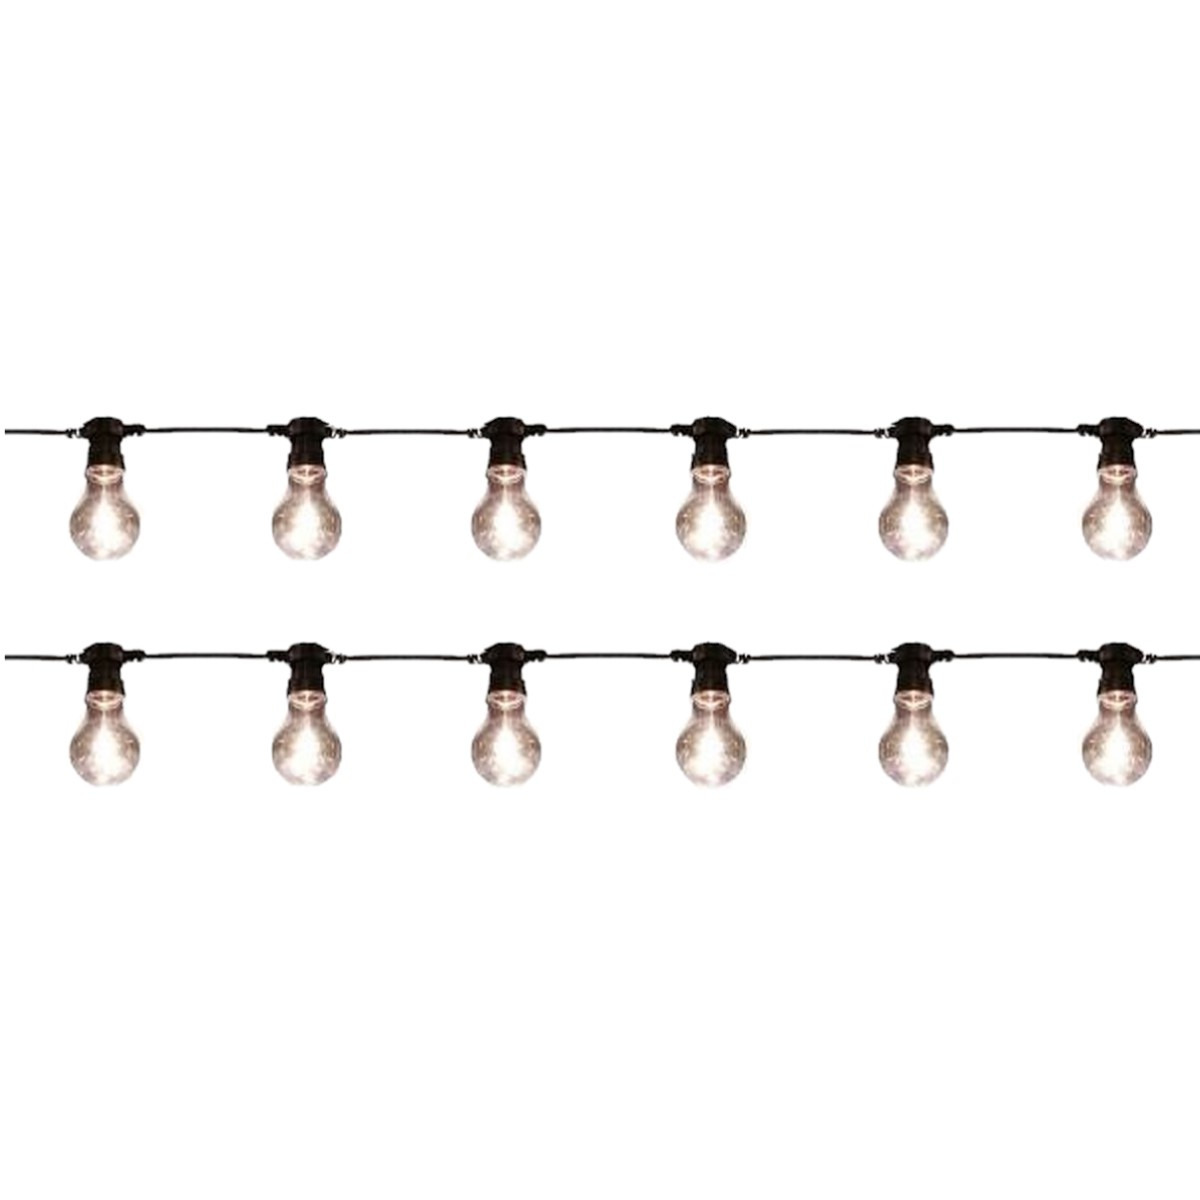 2x stuks binnen-buiten verlichting lichtsnoer 10 meter met warm witte LED lampjes